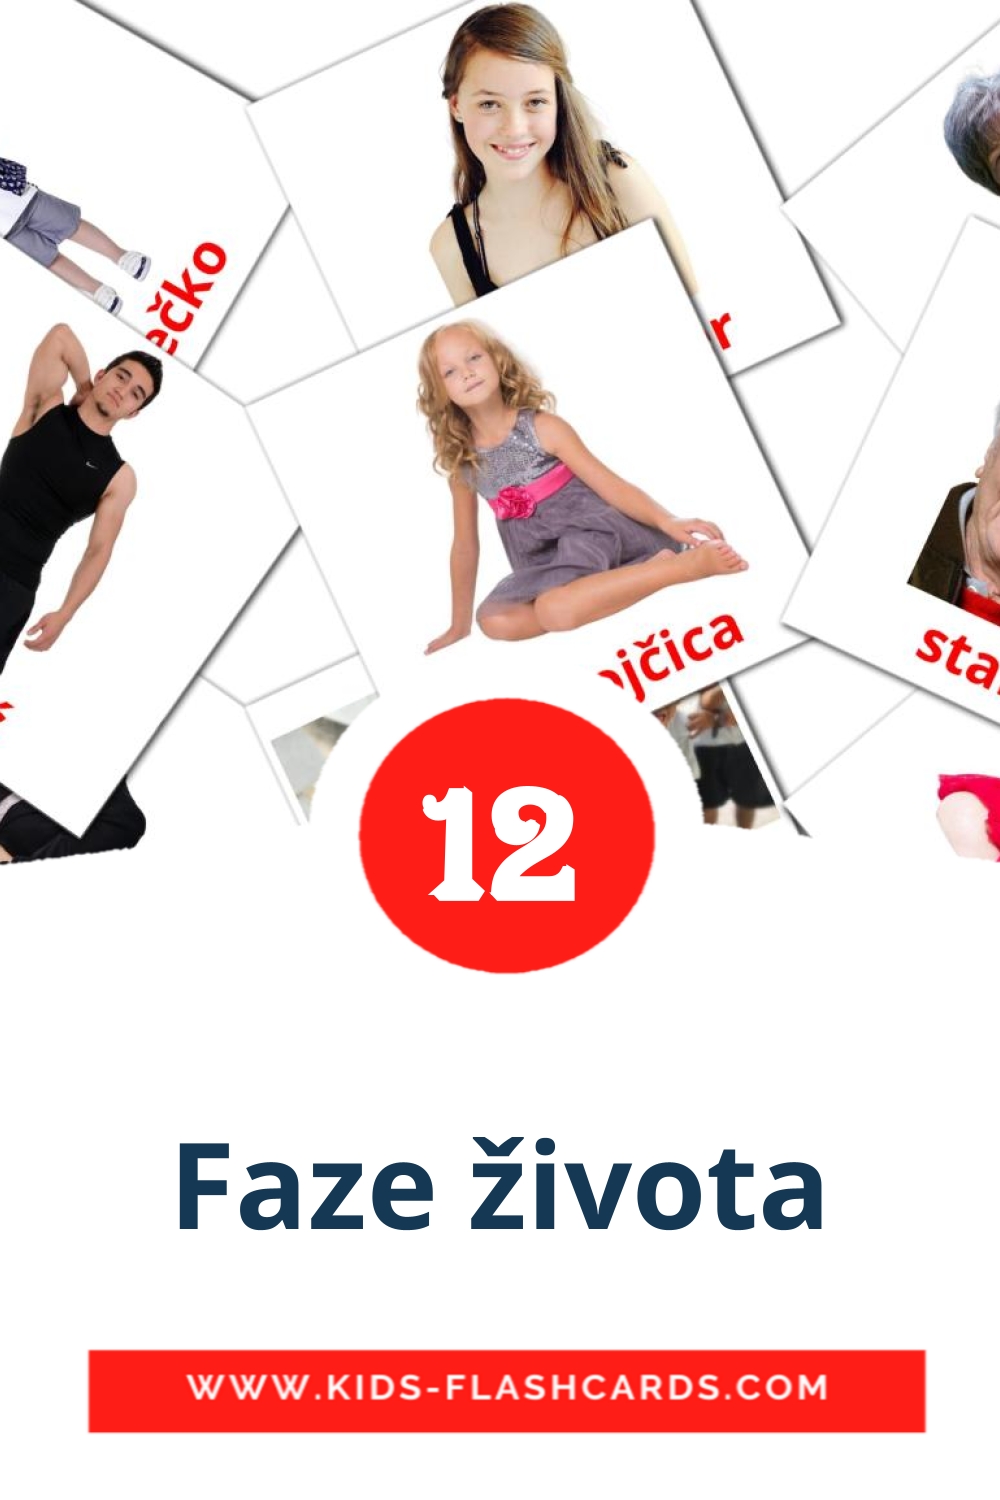 Faze života на сербском для Детского Сада (12 карточек)